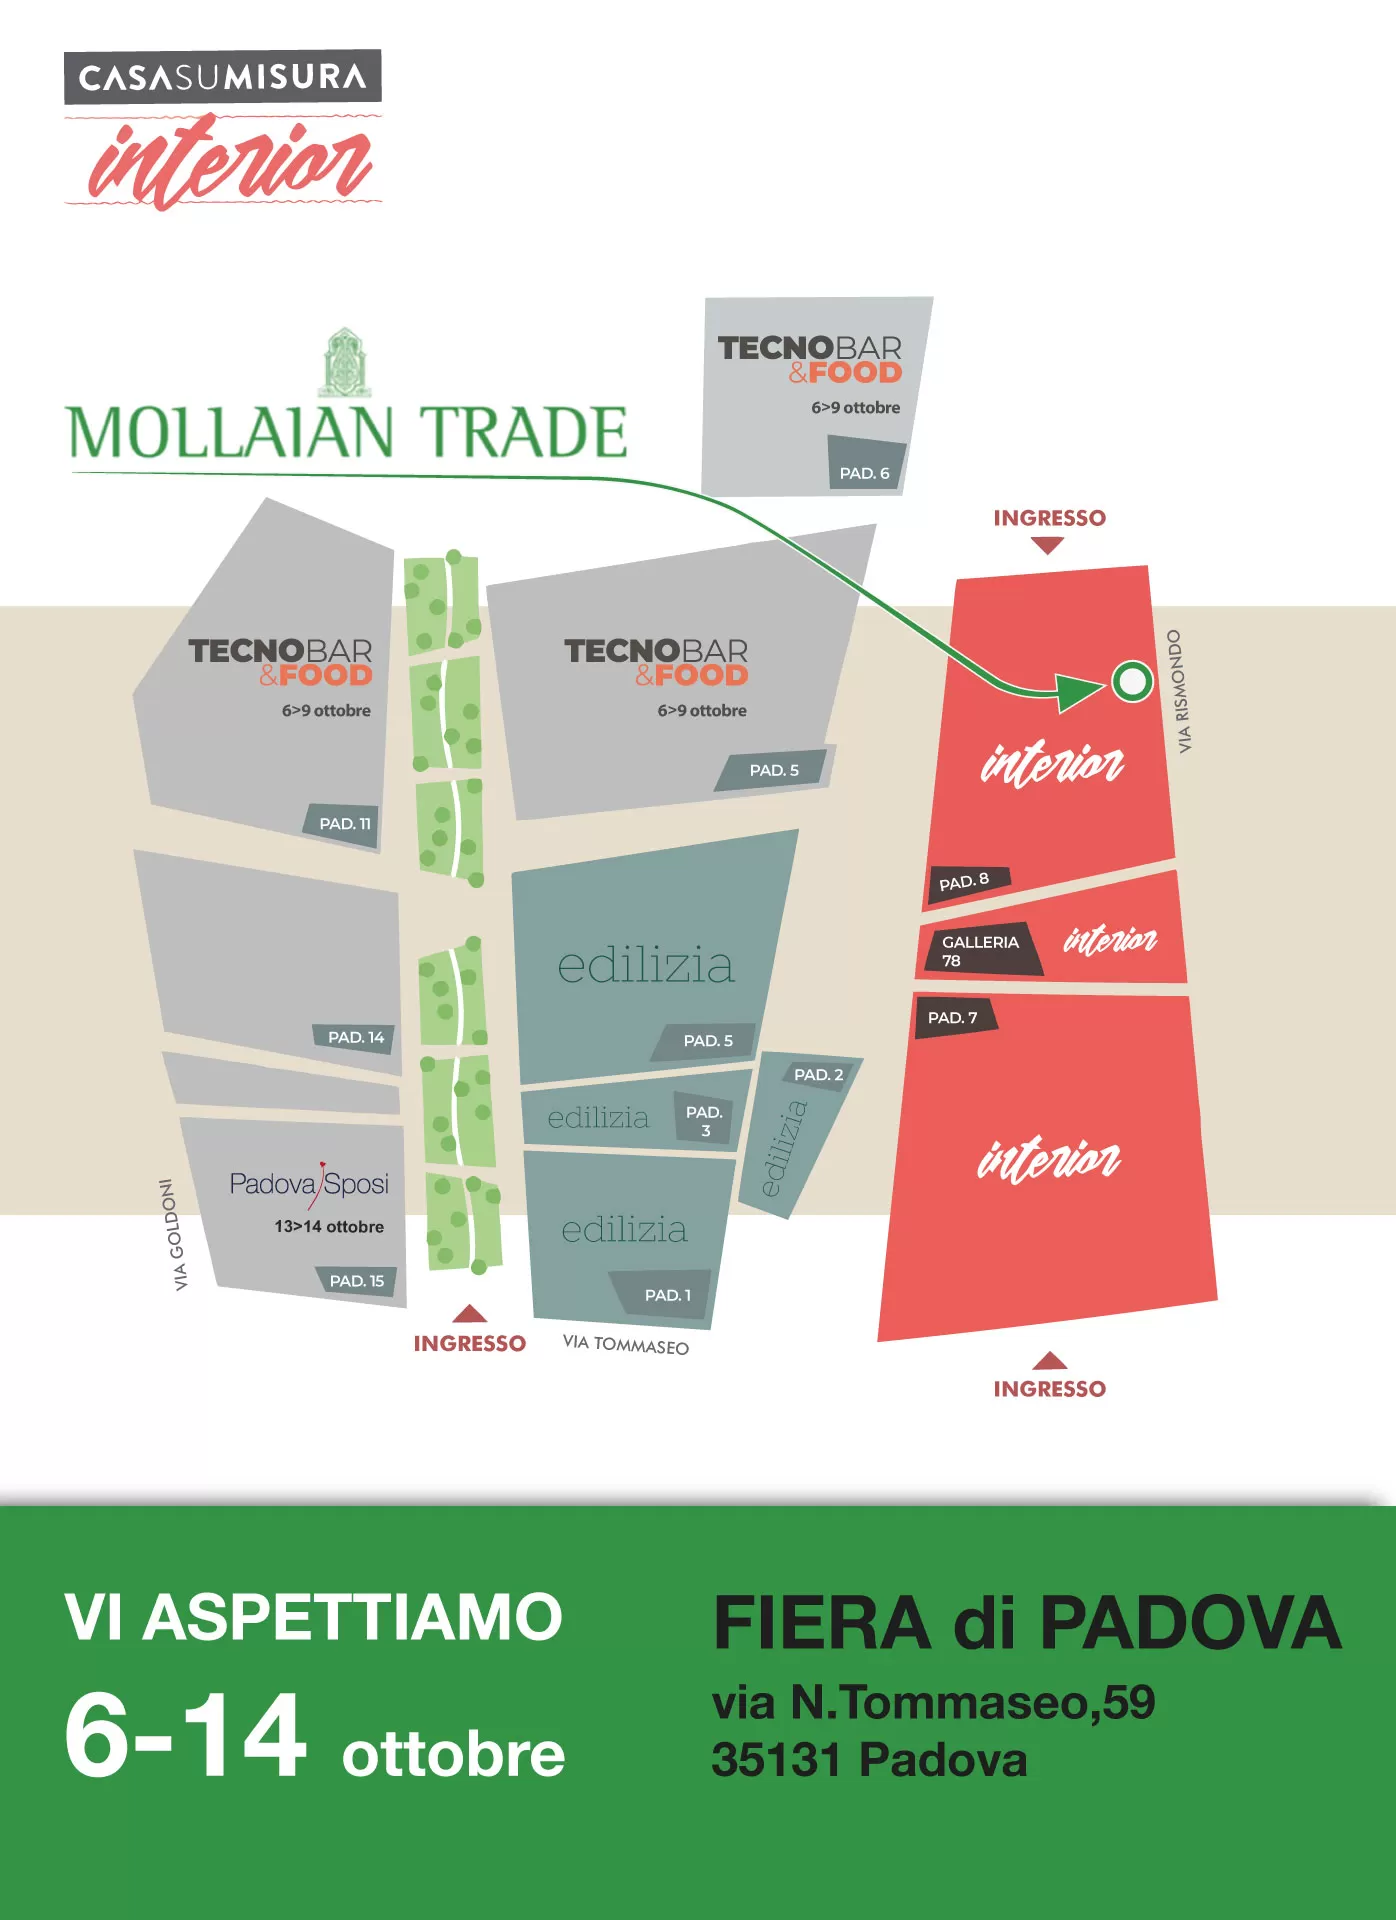 Casa su Misura 2018 Padova: Mollaian Trade tra gli espositori